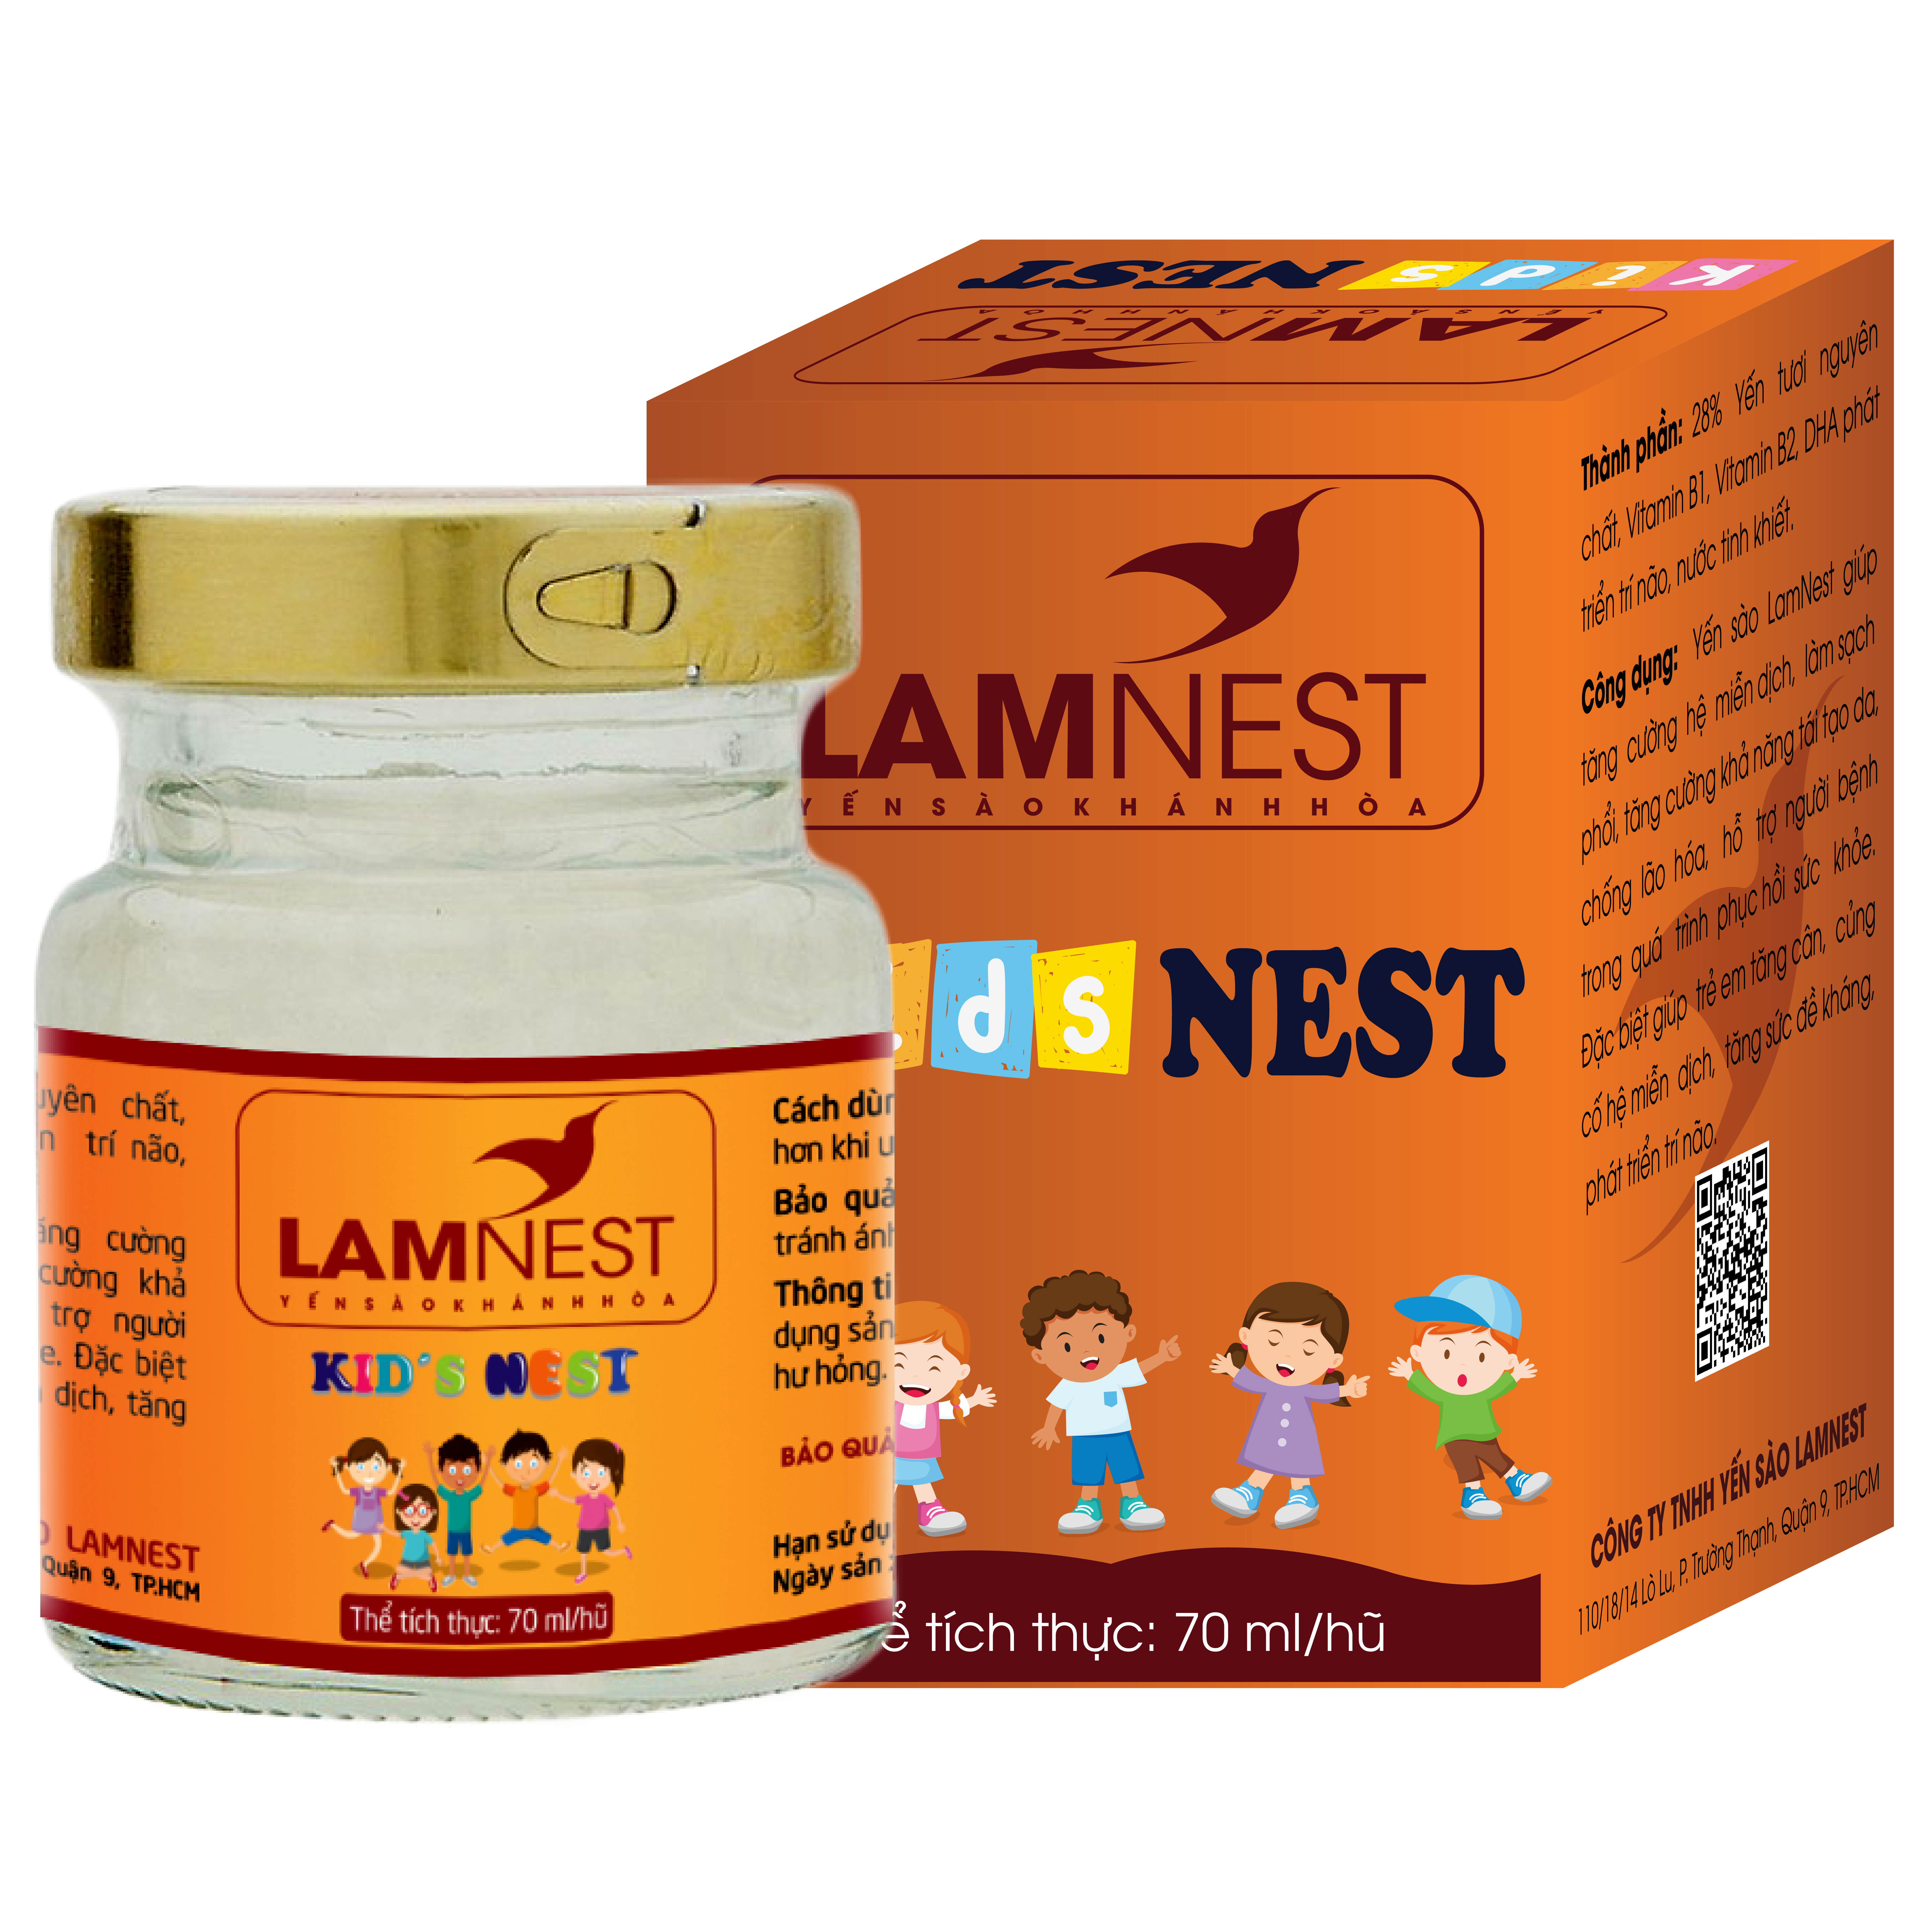 1 thùng 60 hủ yến đậm đặc (28%) KID NEST bổ dưỡng cho bé - Lamnest